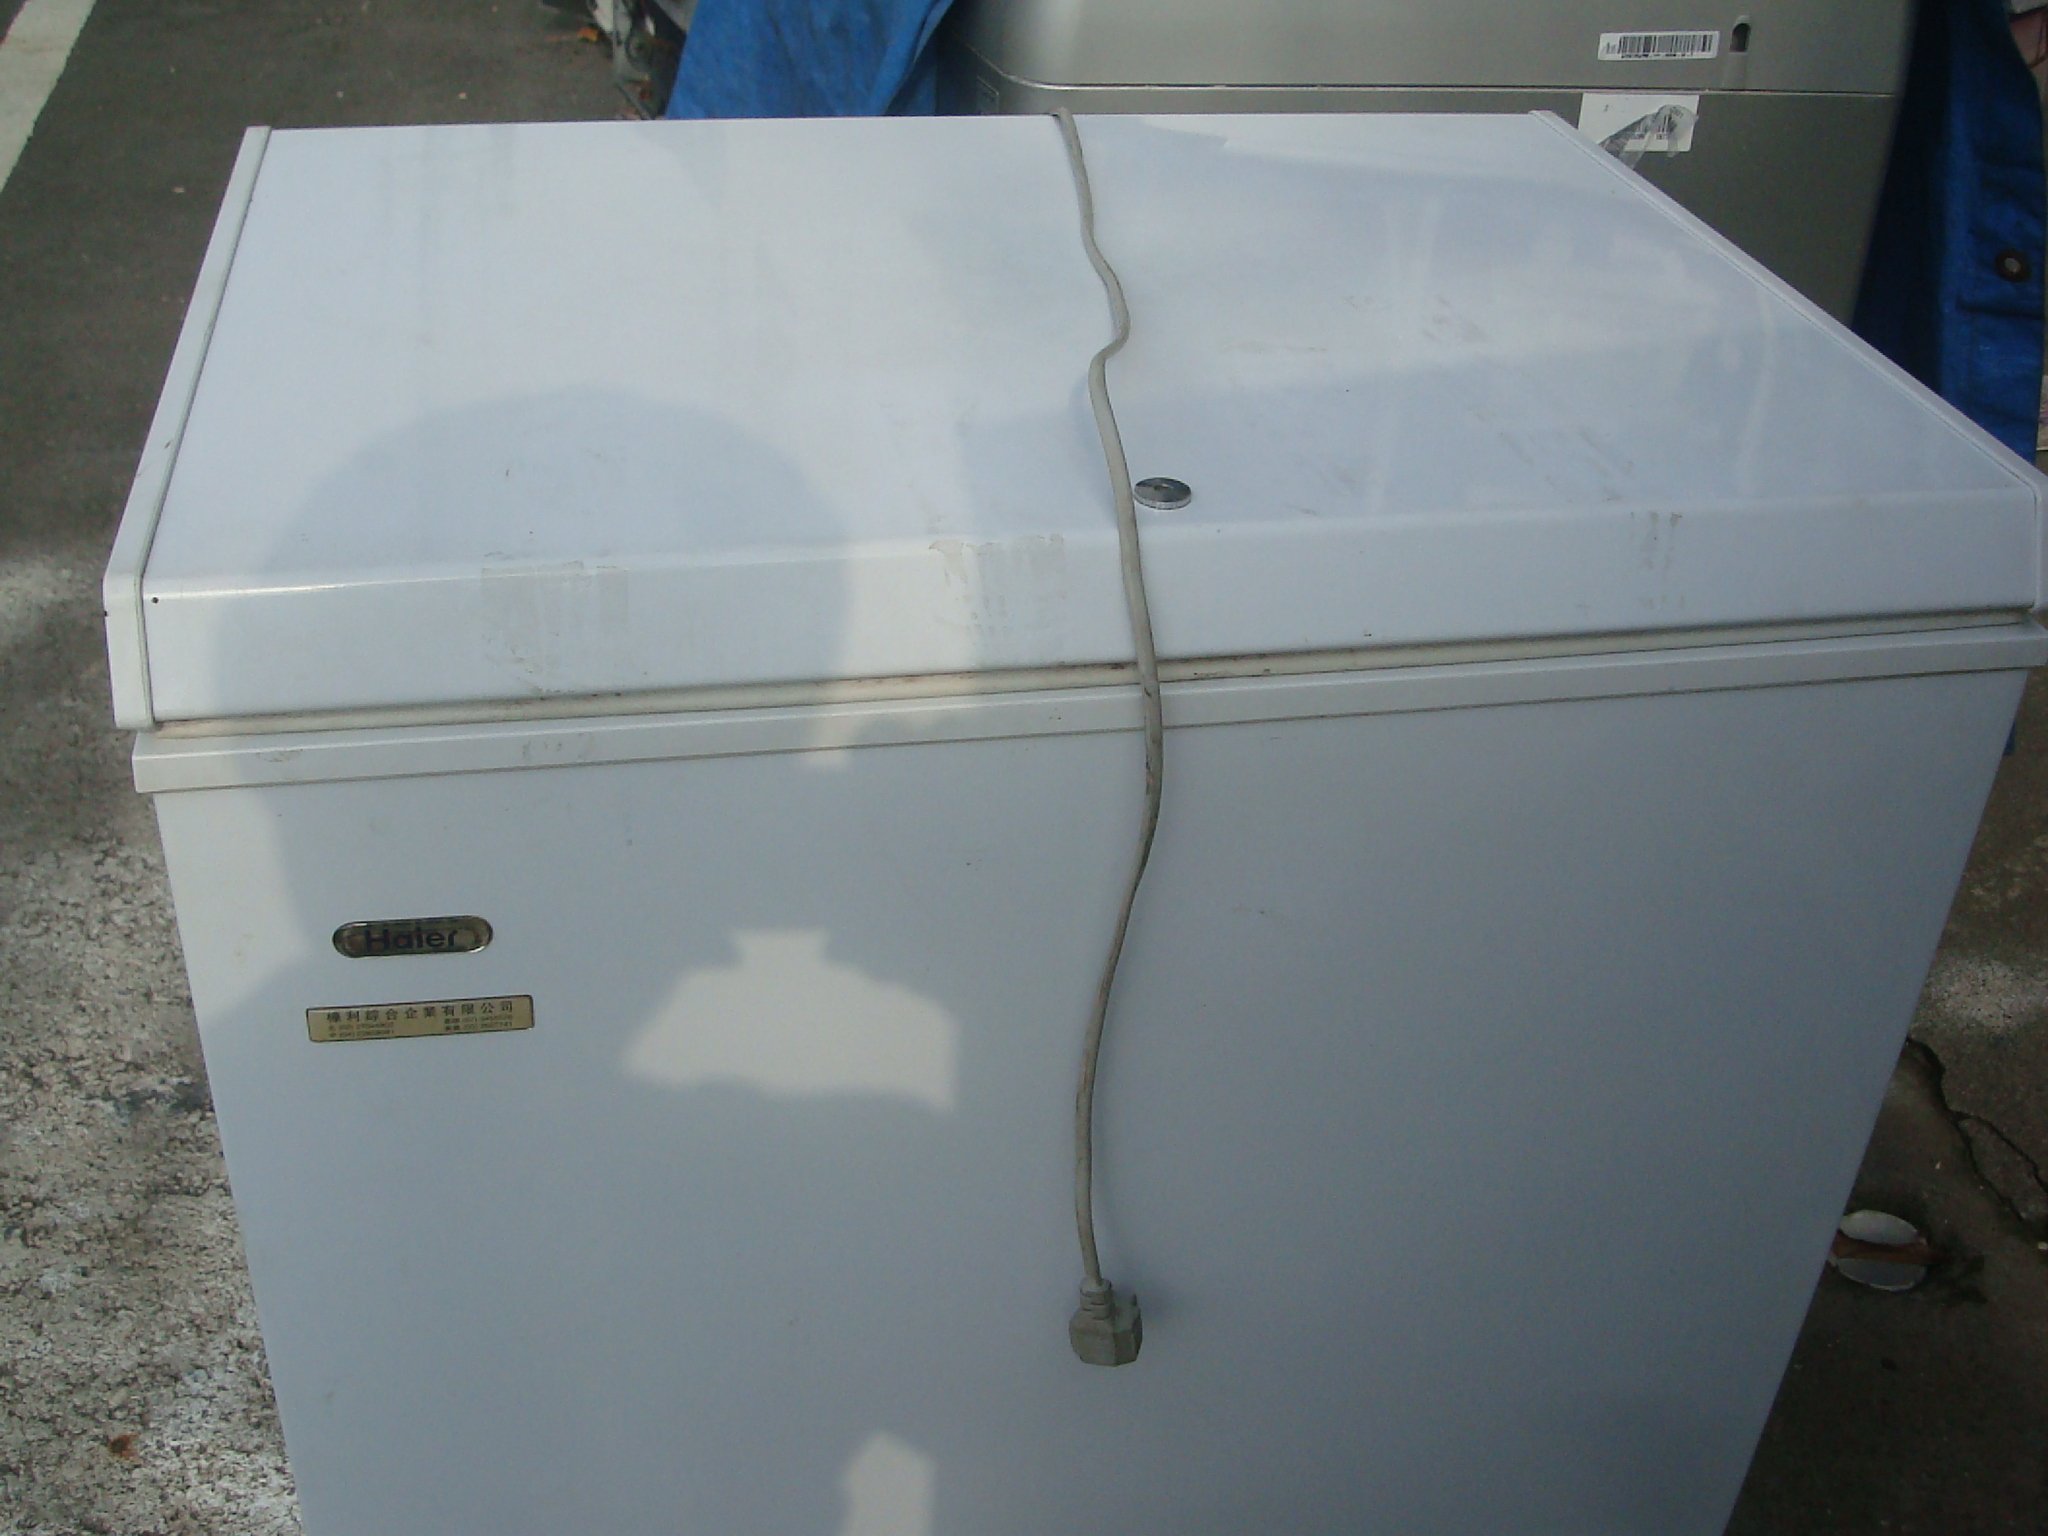 高雄屏東萬丹電器醫生 中古二手上掀式冷凍櫃 2.5尺 自取價 4999